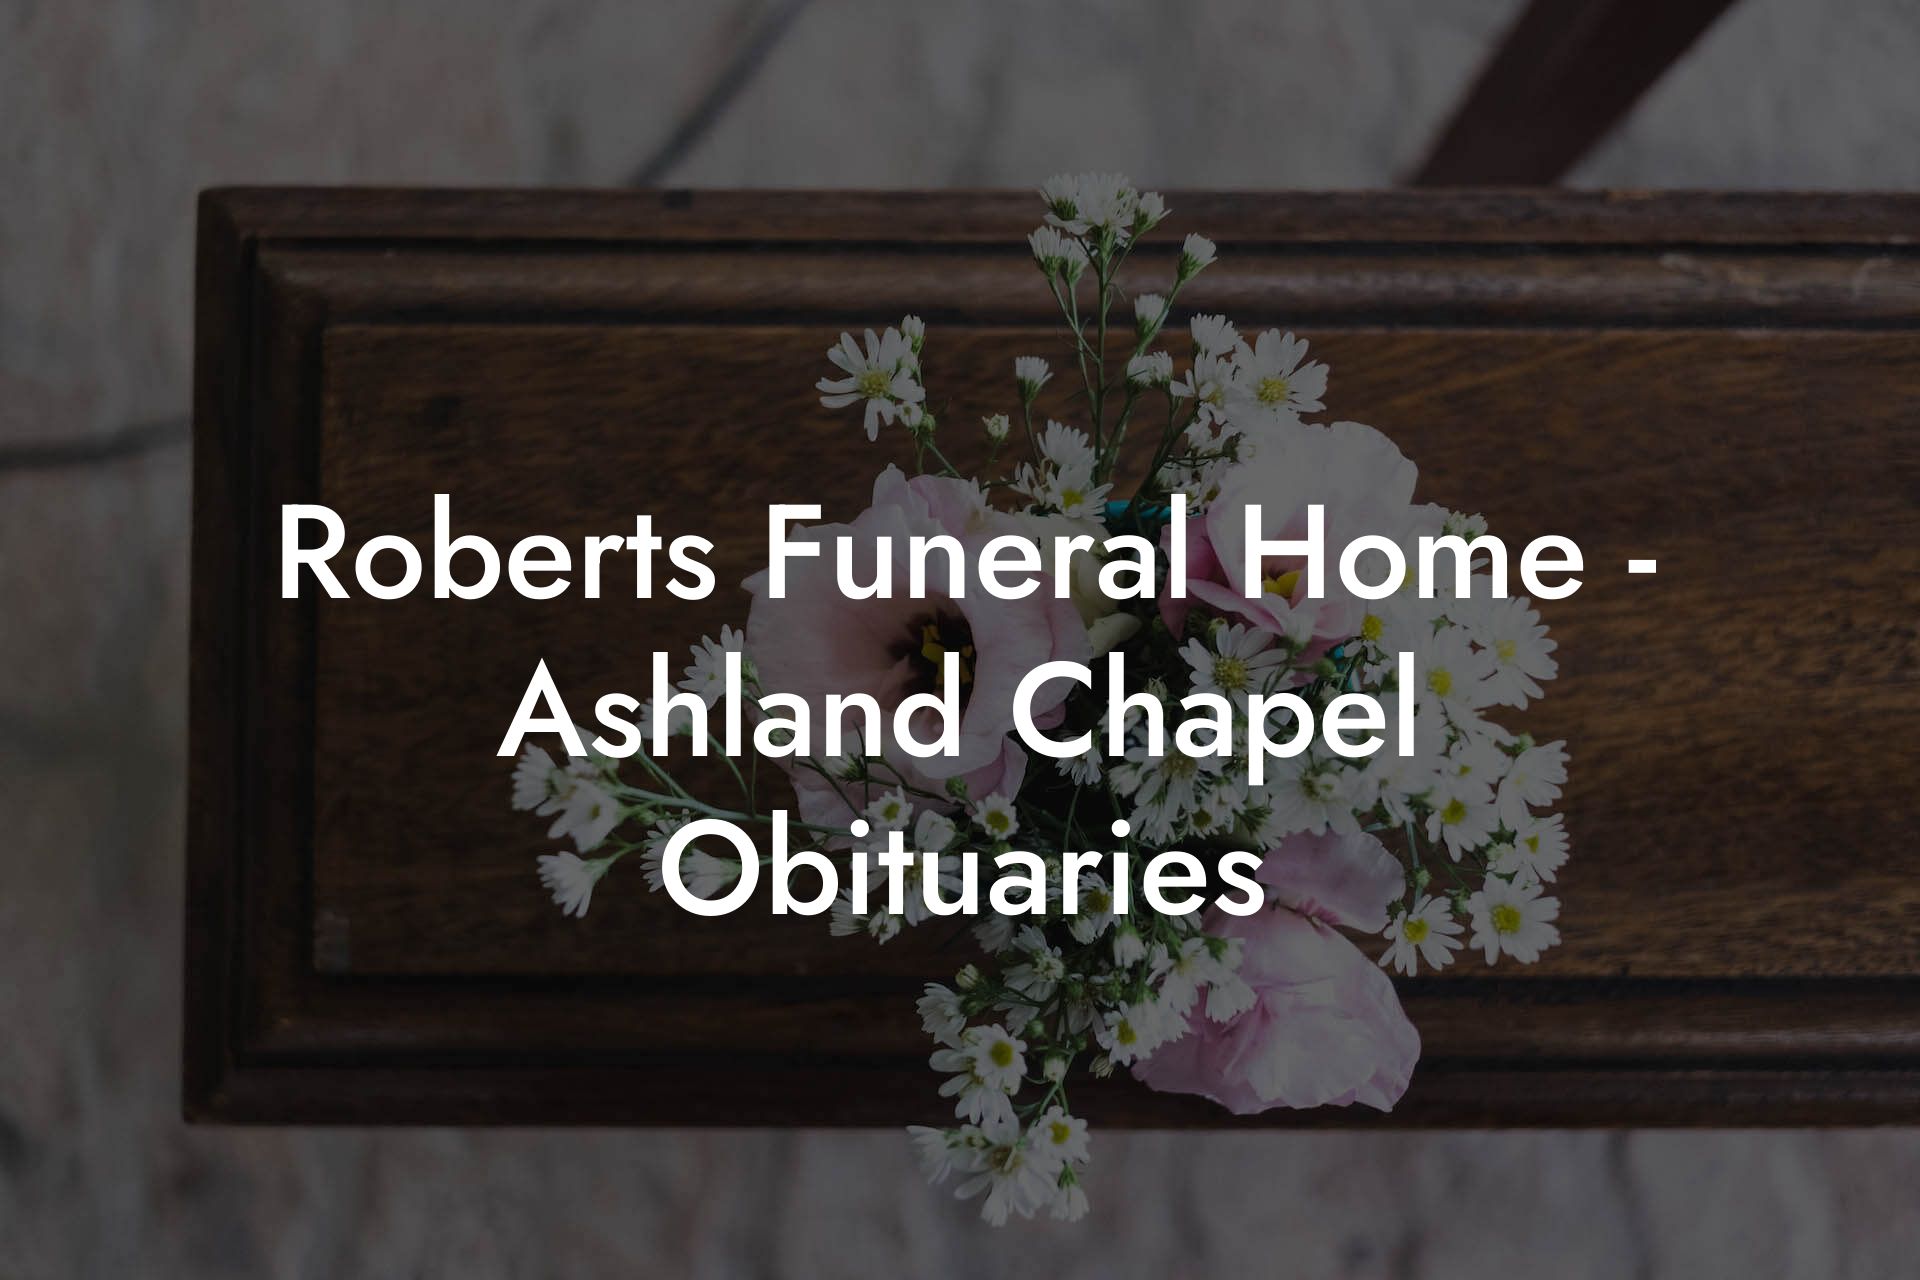 Roberts Funeral Home - Ashland Chapel Obituaries